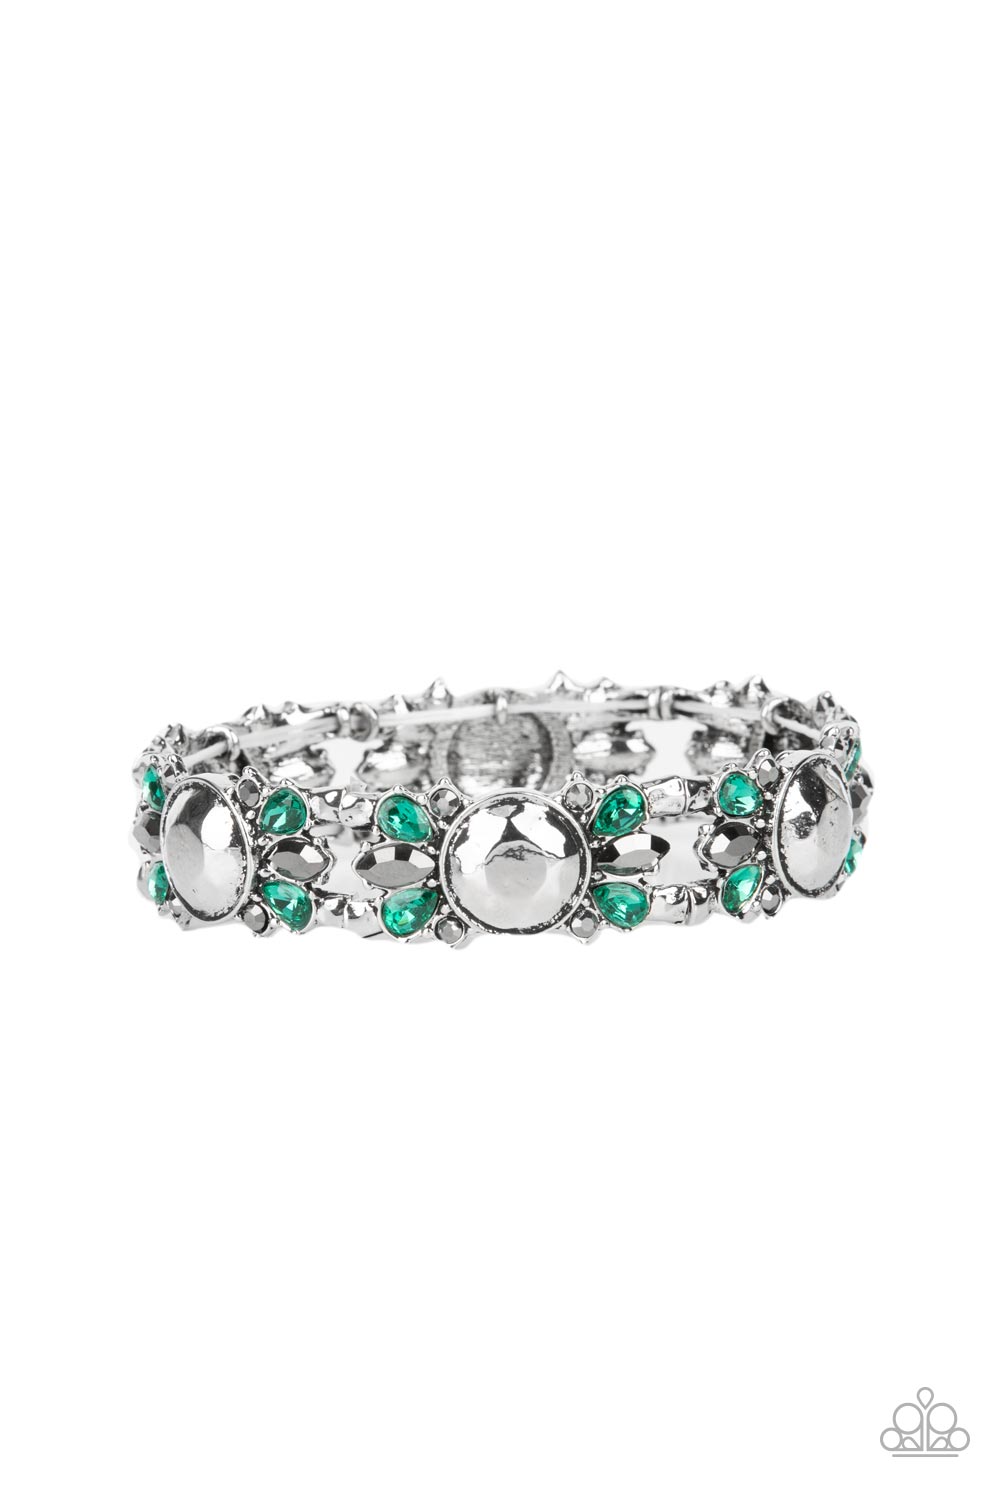 Definitively Diva - Green bracelet